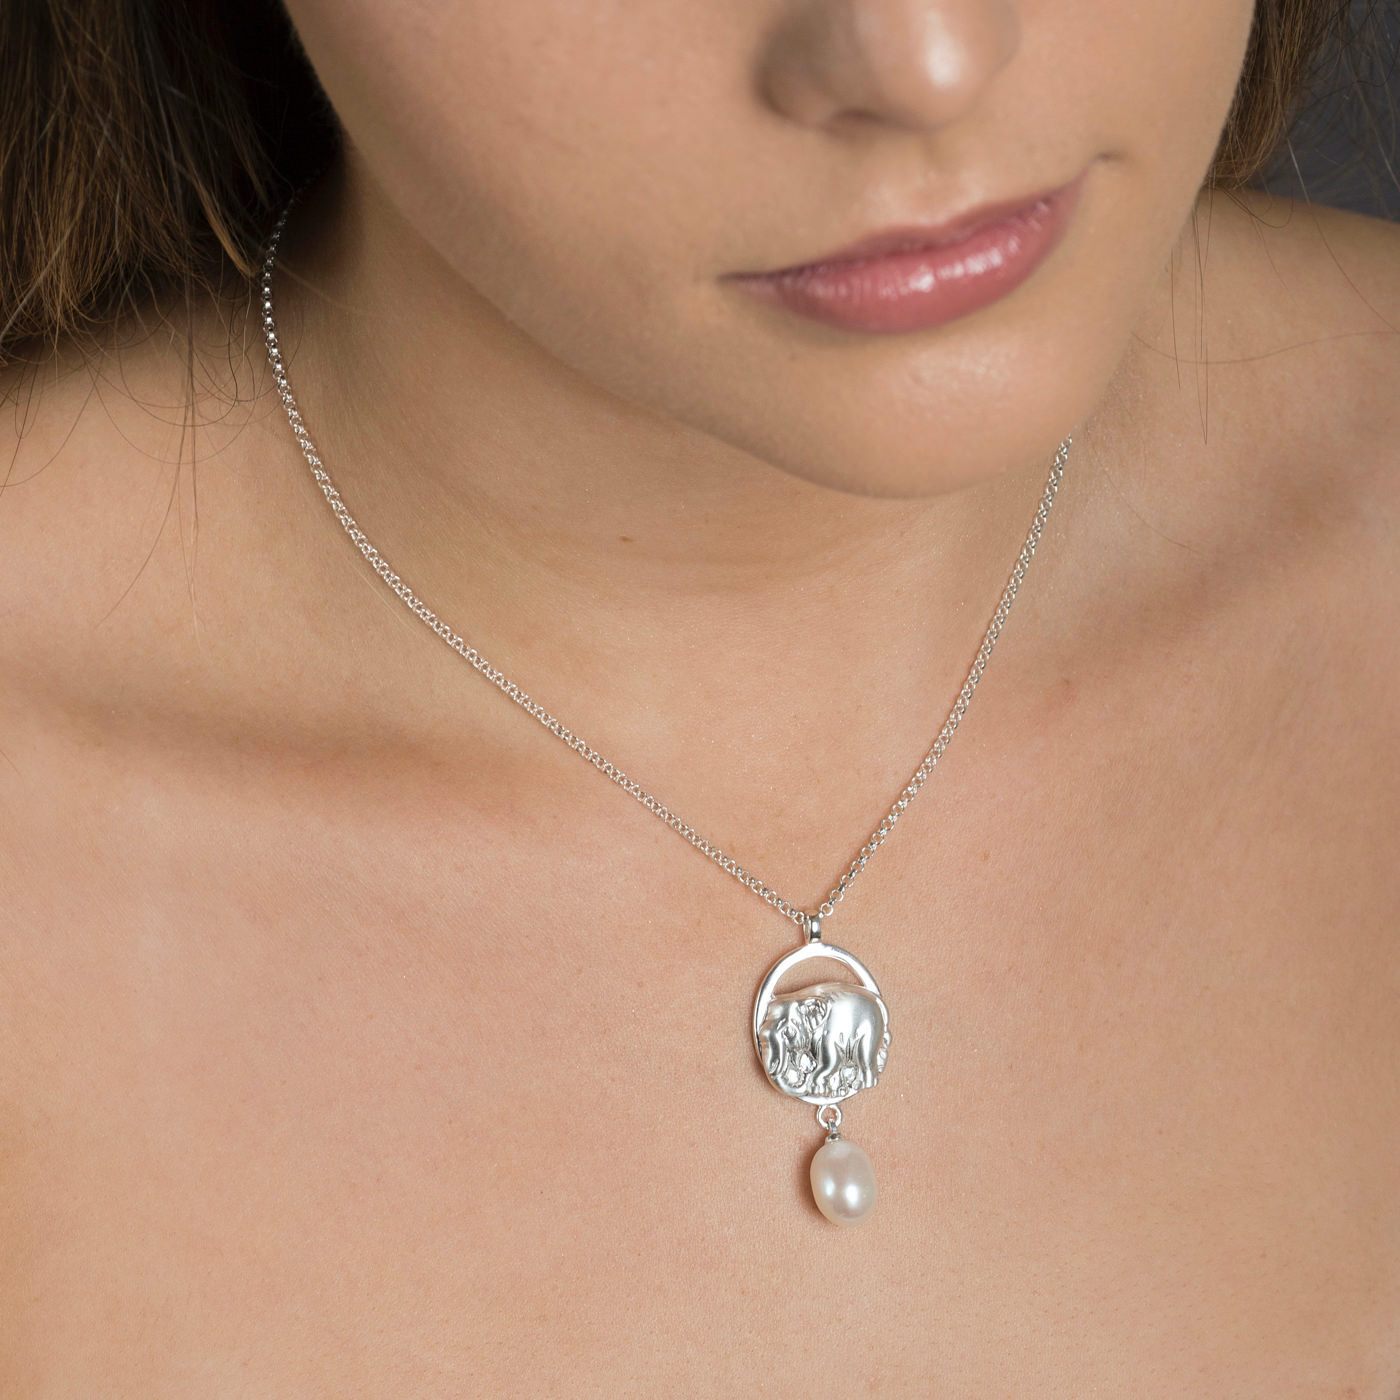 Precious Elephant Necklace - Silver